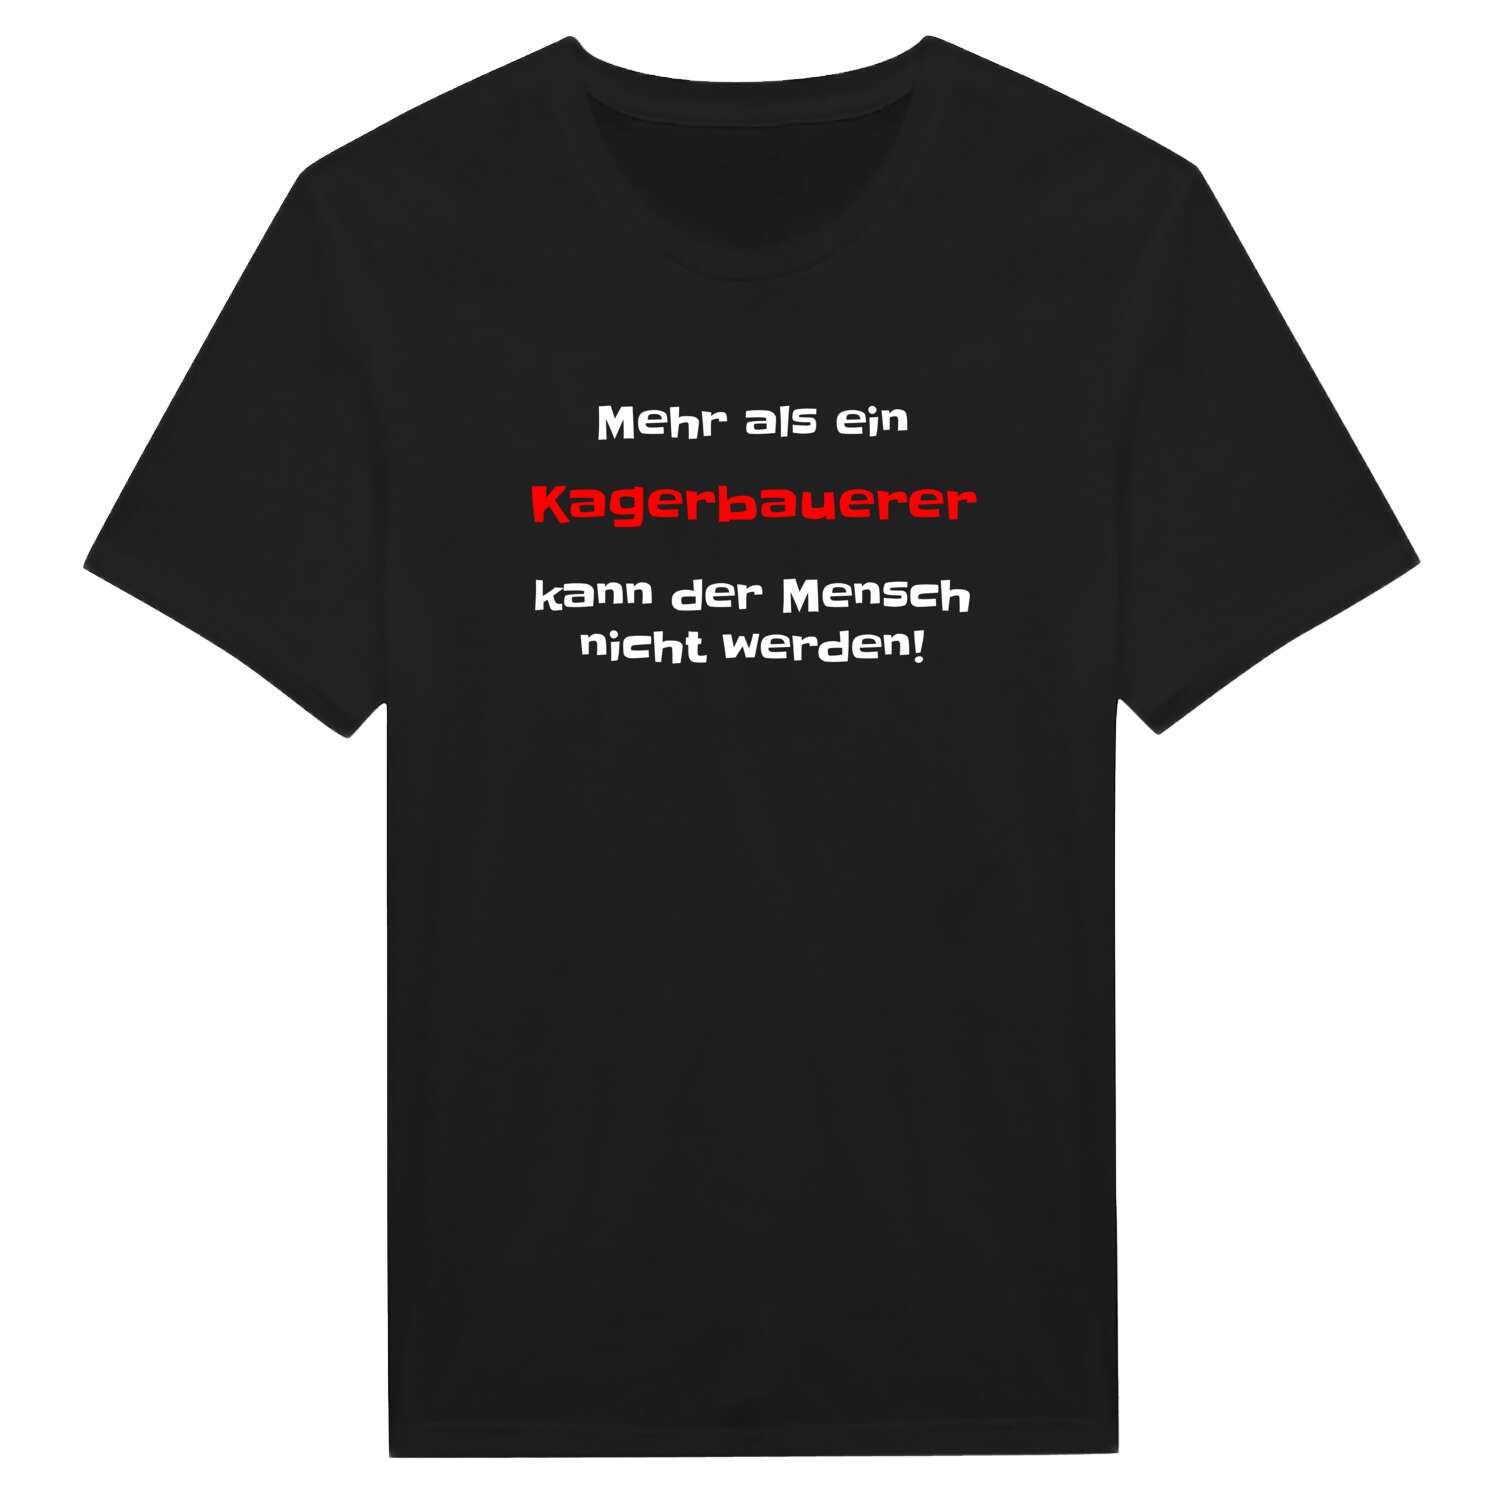 Kagerbauer T-Shirt »Mehr als ein«